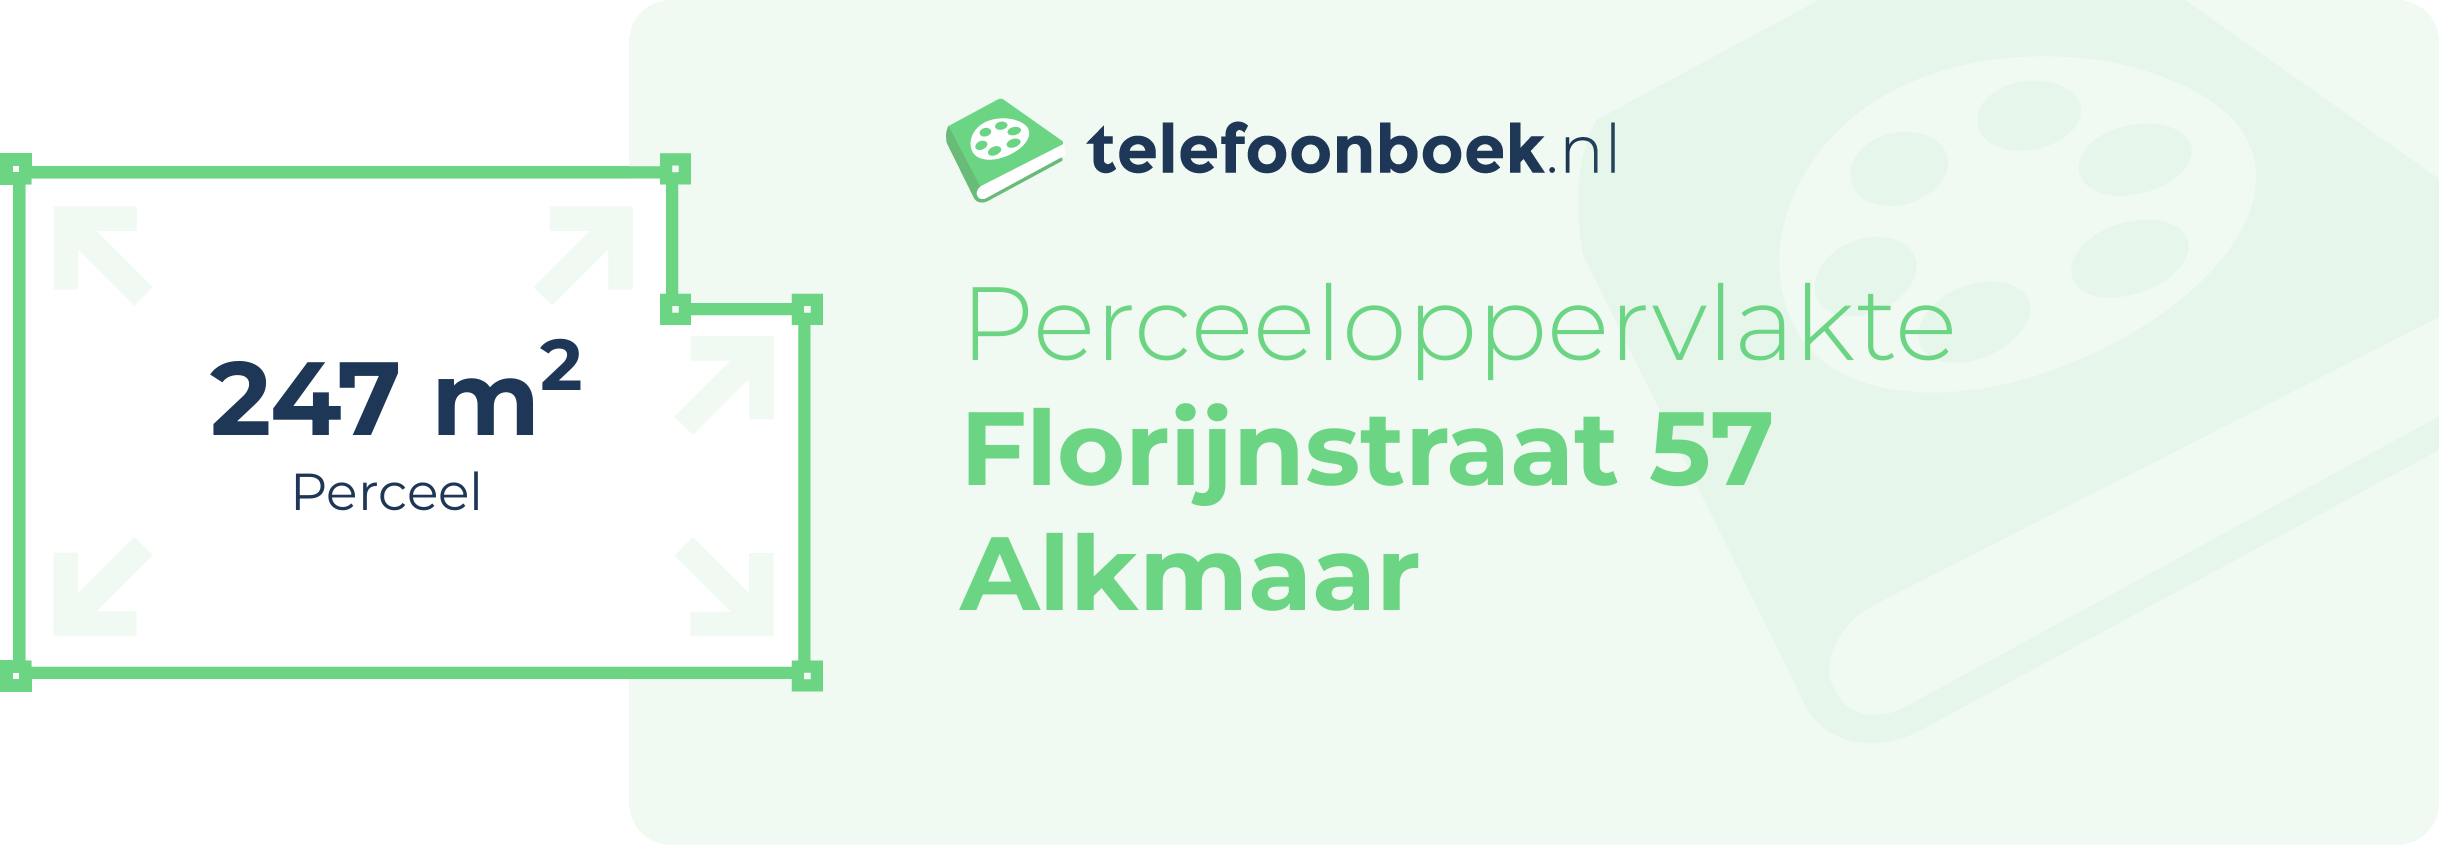 Perceeloppervlakte Florijnstraat 57 Alkmaar